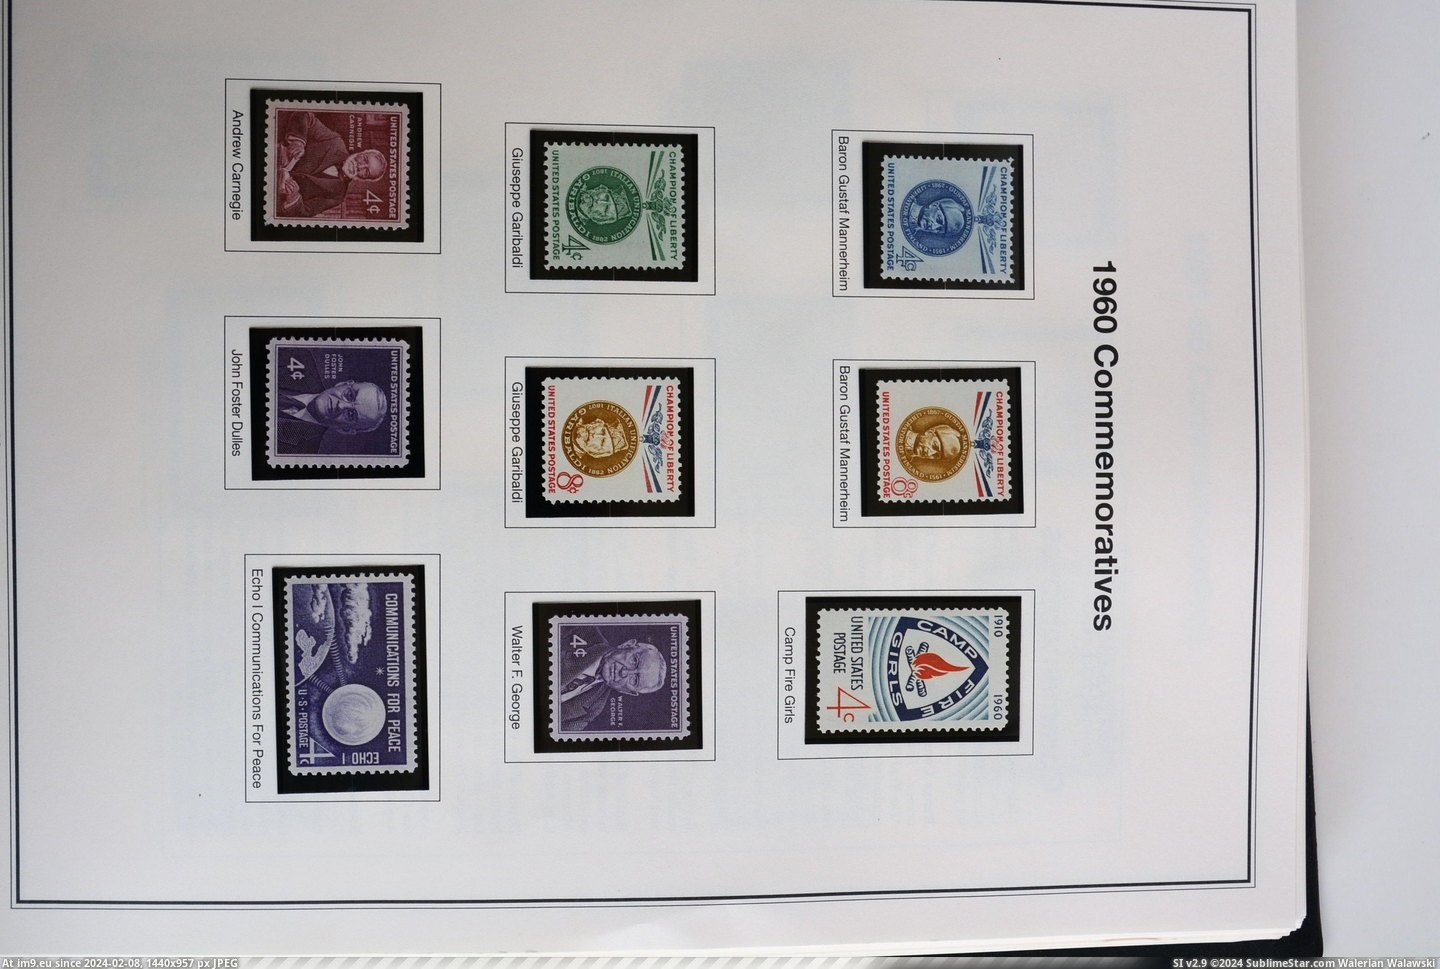  #Dsc  DSC_0848 Pic. (Obraz z album Stamp Covers))